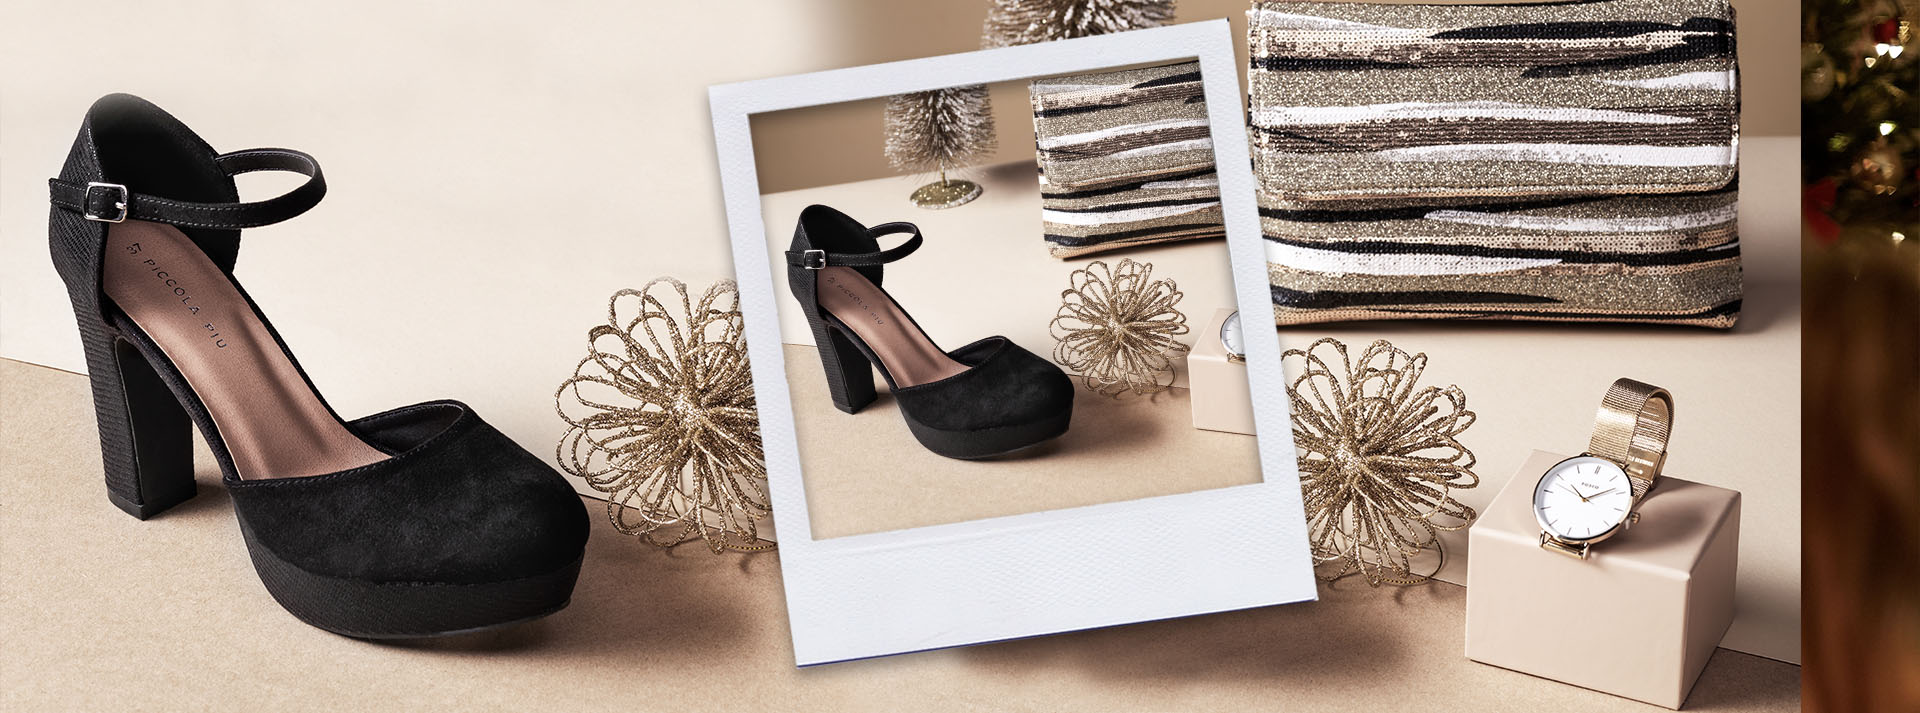 Zapatos salón mujer, regalos originales Navidad